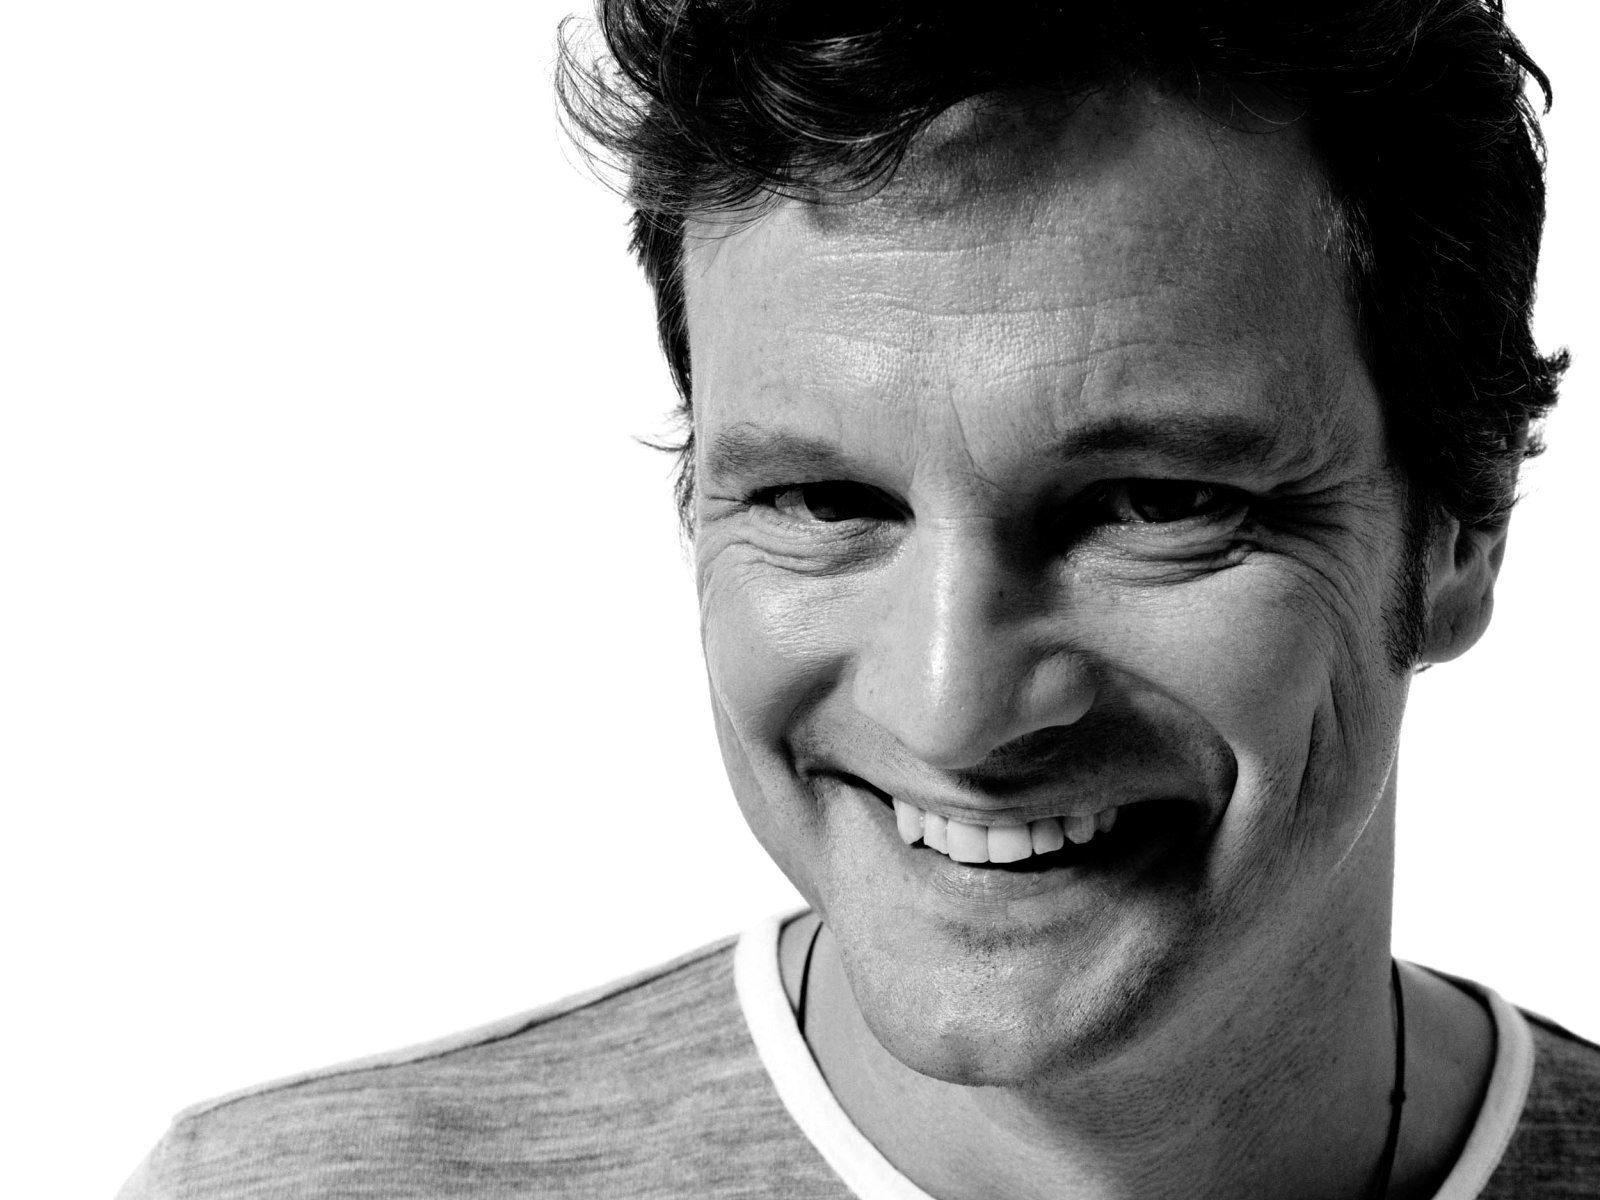 Colin Firth Smile Wallpaper 55607 1600x1200 px